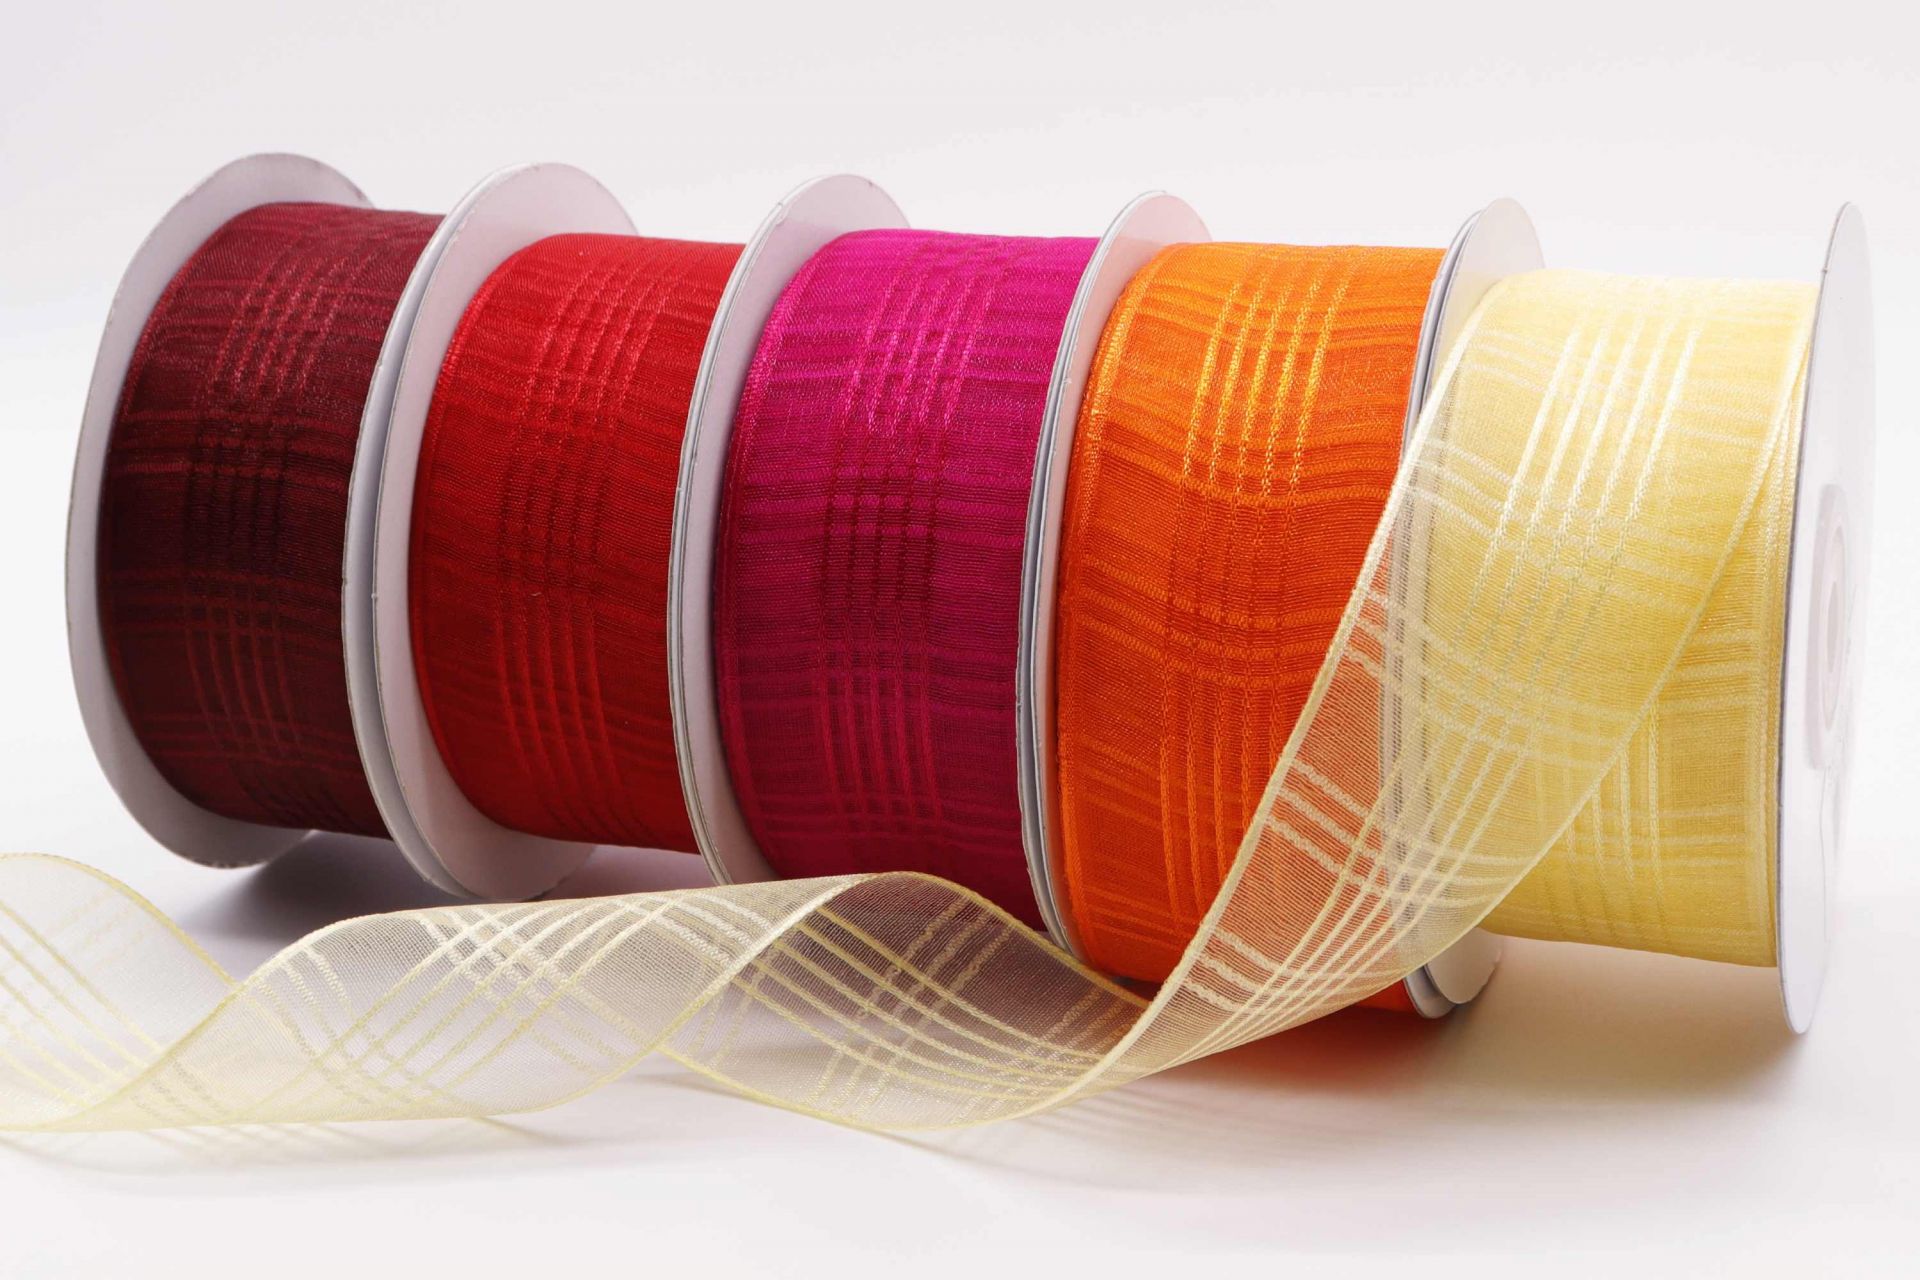 Wholesale Plastic Ribbon 